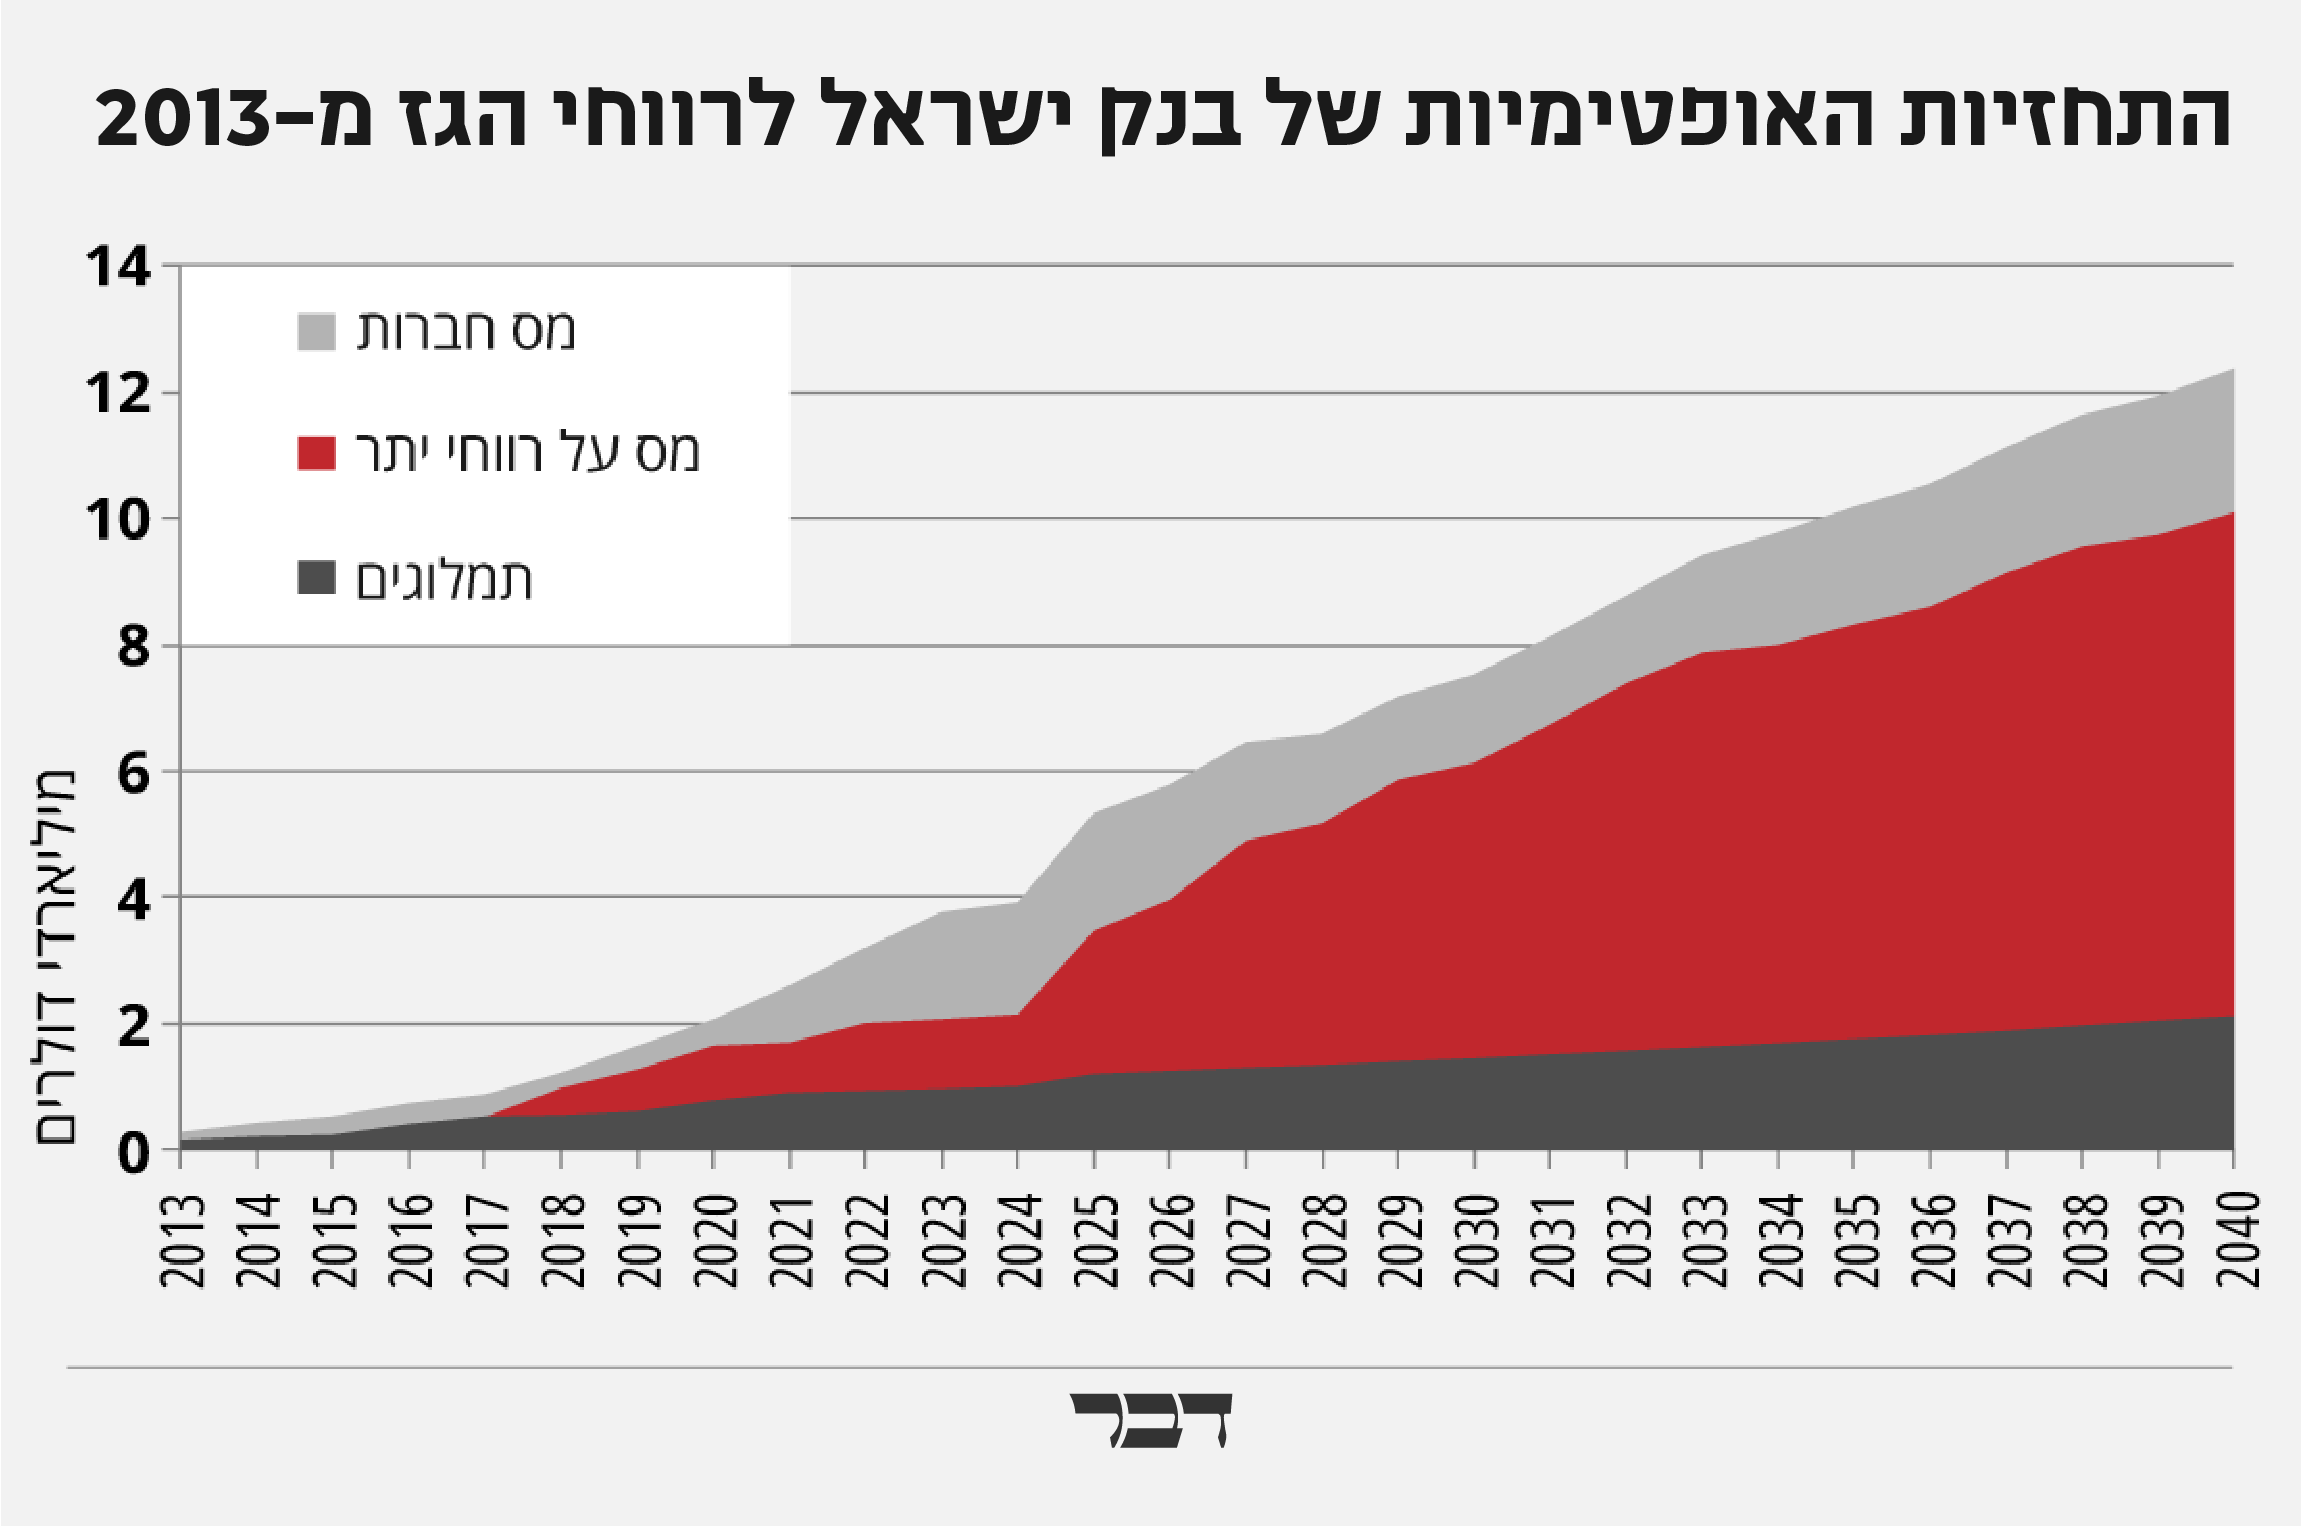 התחזית המוקדמת של בנק ישראל לרווחי הגז מ-2013. הסכומים בפועל היו נמוכים בהרבה